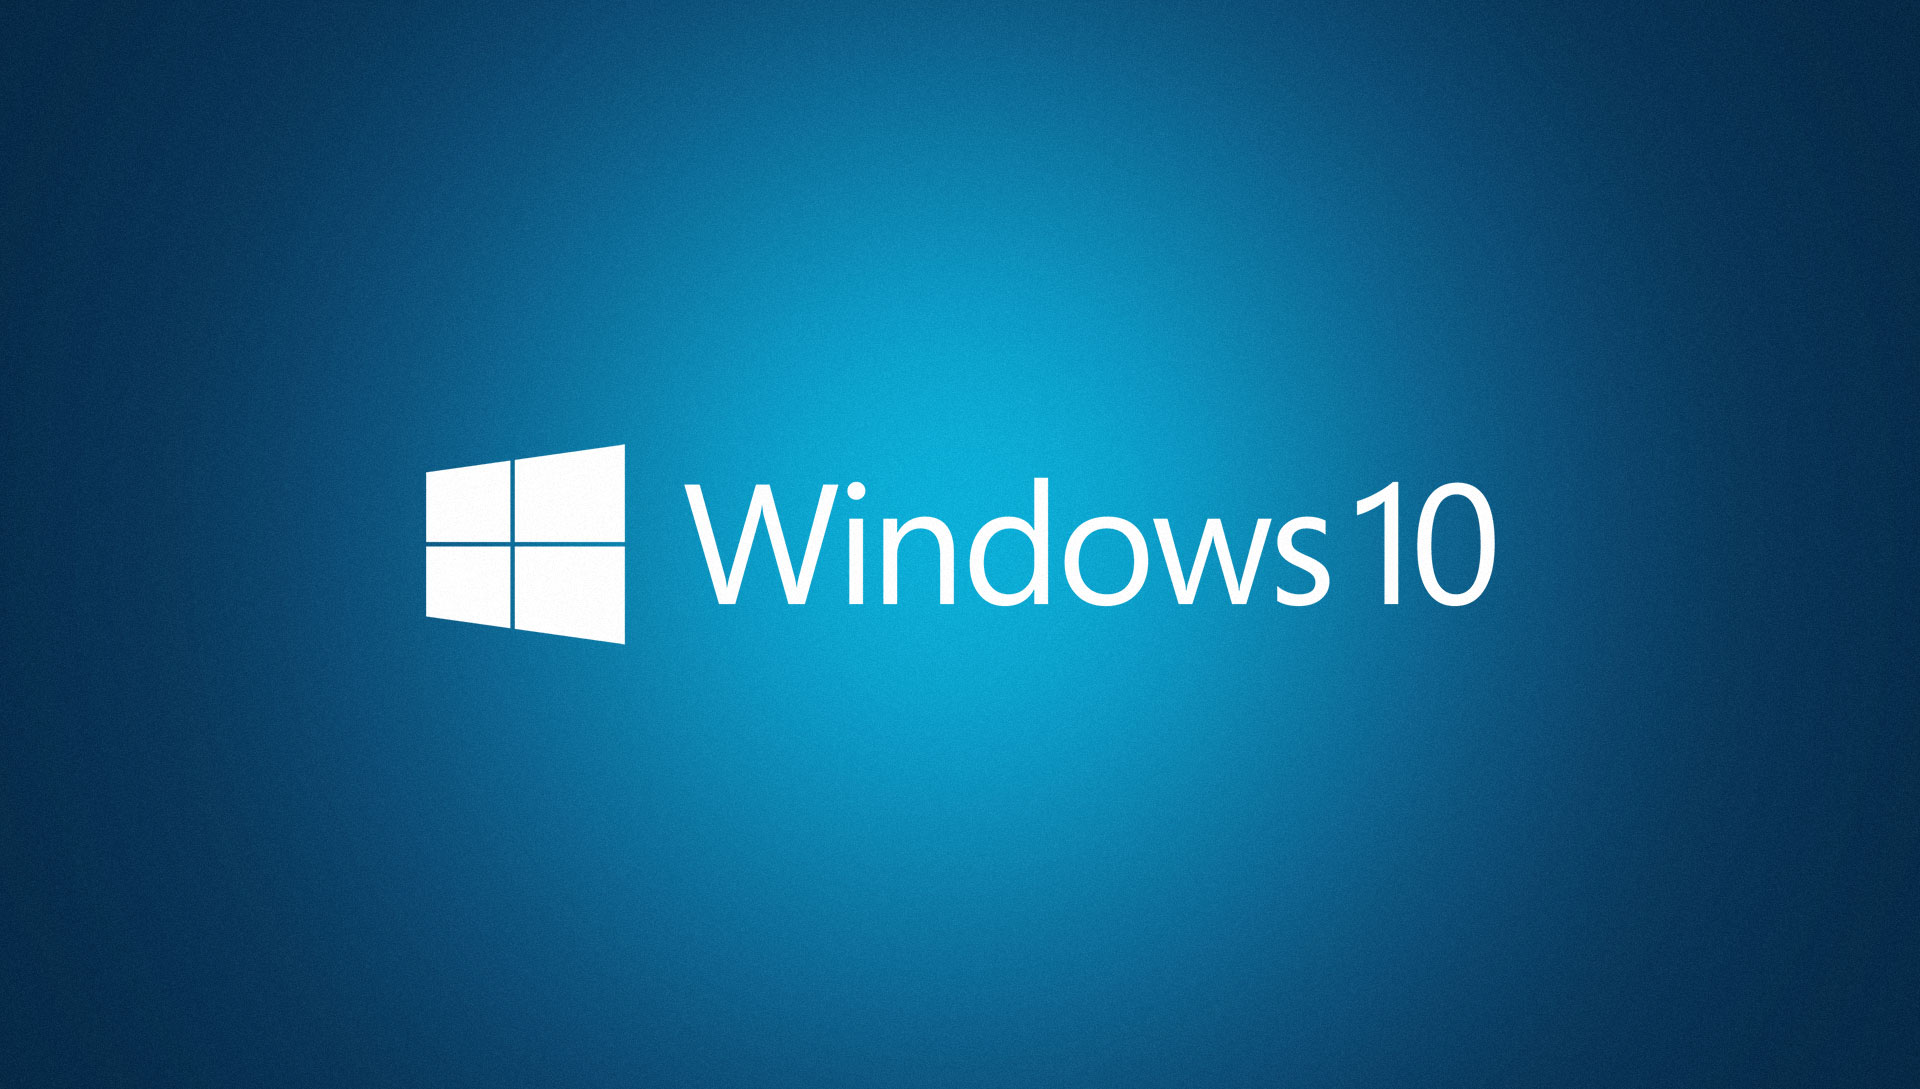 Como conseguir o Windows 10 de graça sendo um beta tester? Microsoft explica